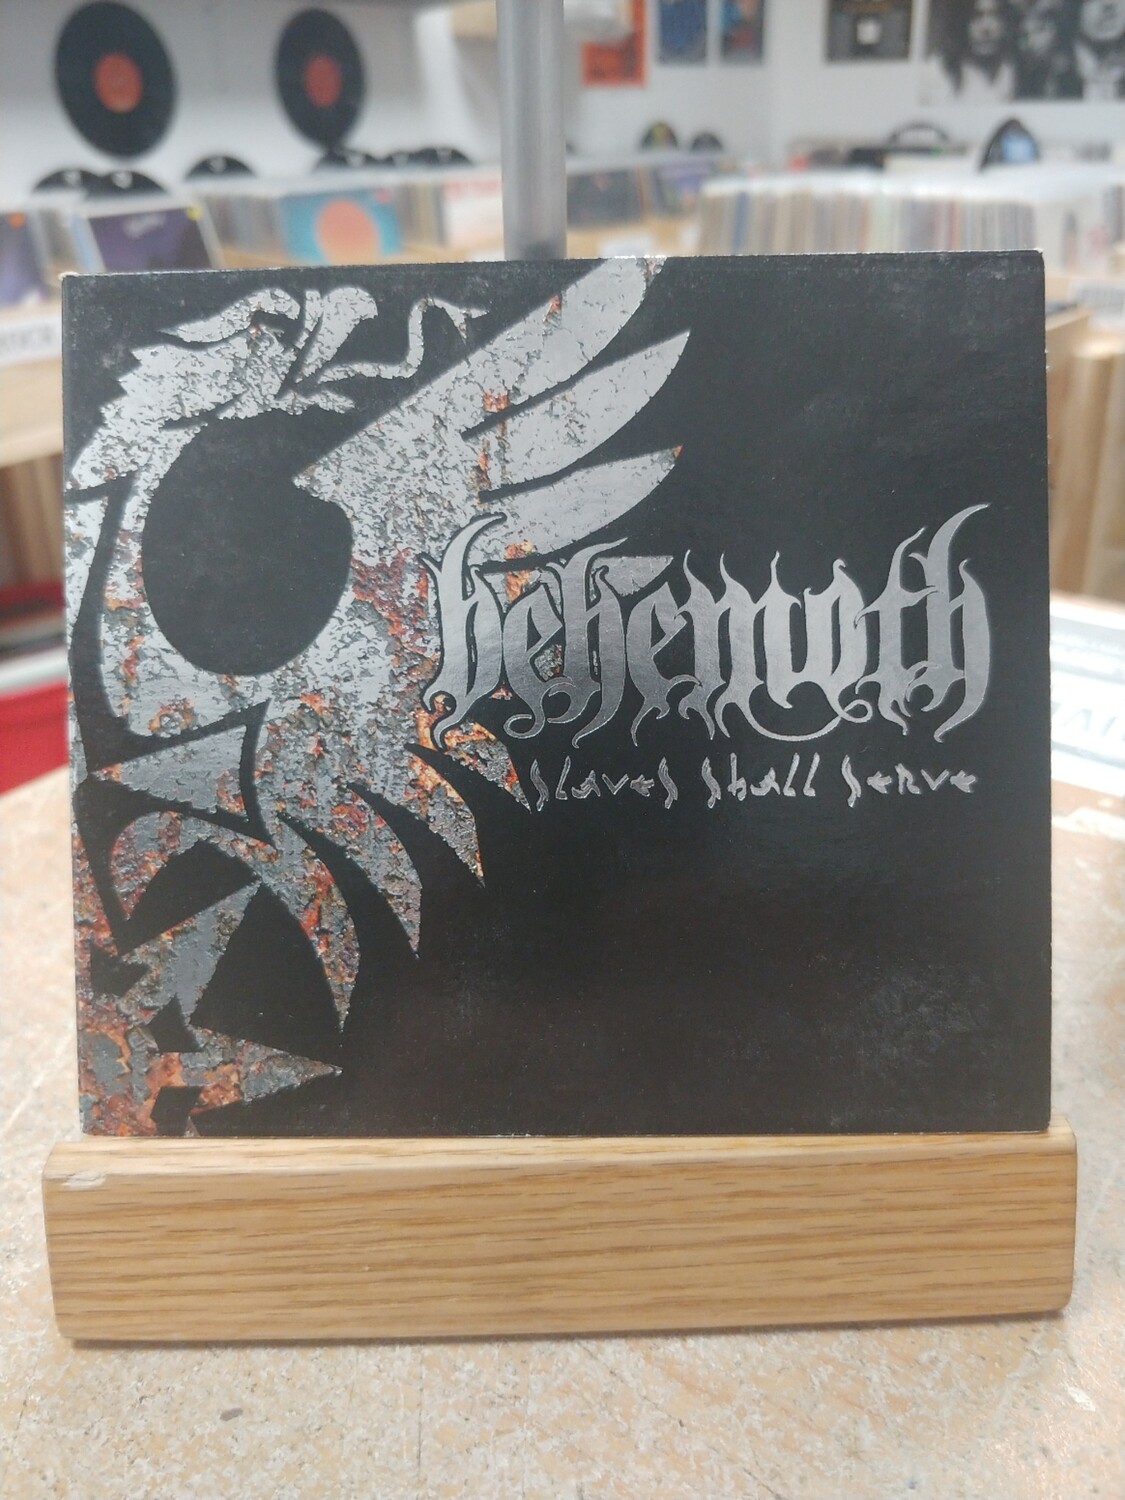 Behemoth - Slaves Shall Serve (CD)